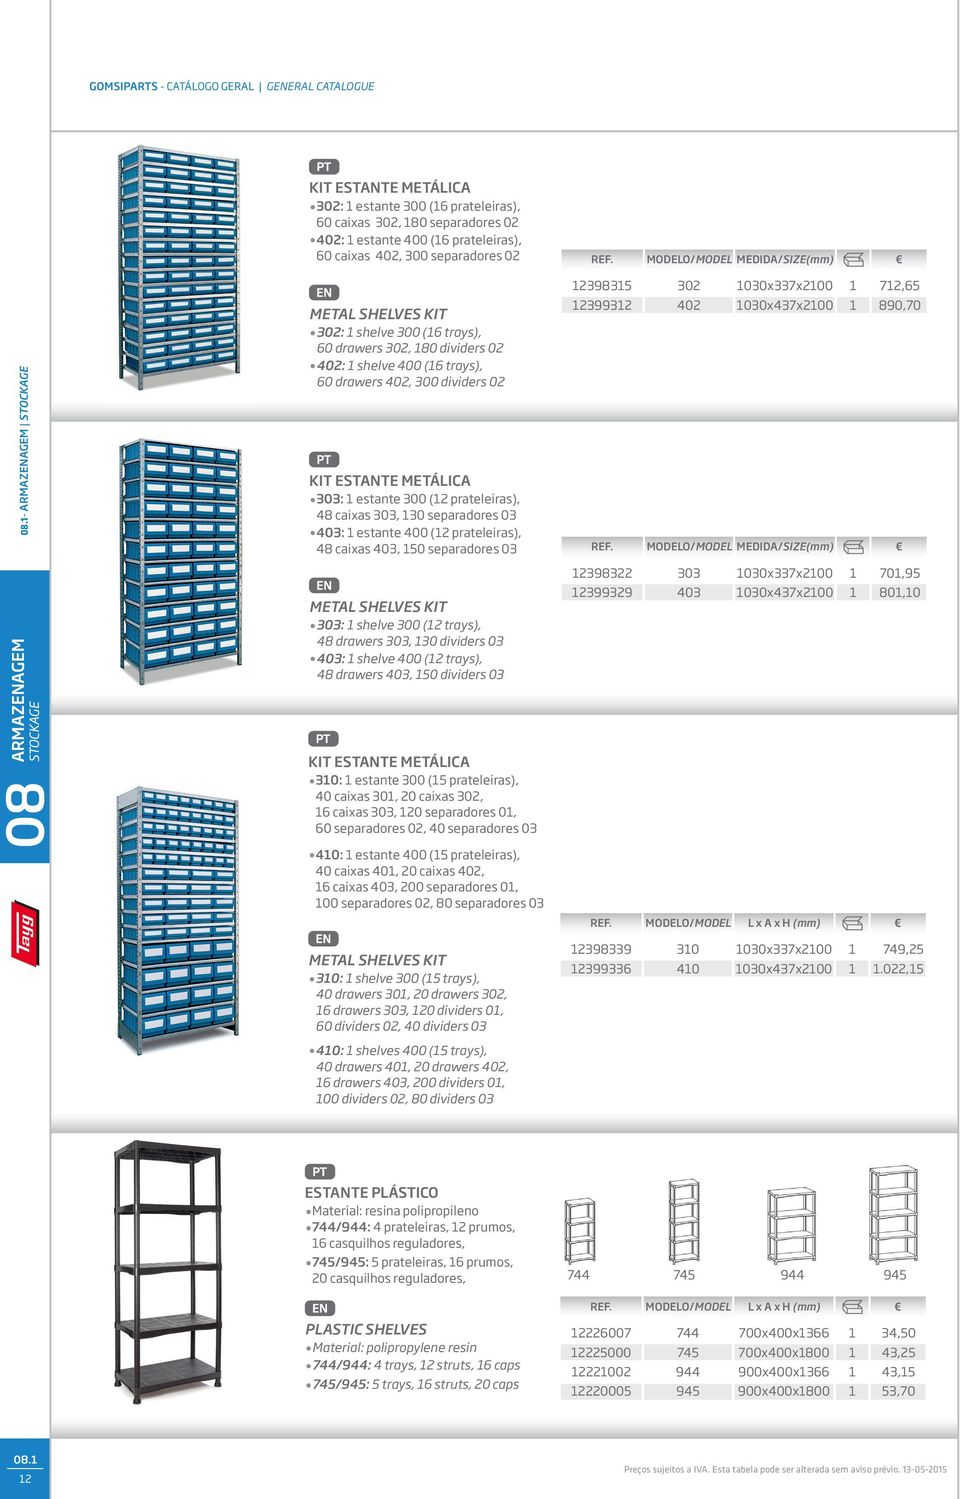 0, 0 separadores 0 0: estante 00 (2 prateleiras), 8 caixas 0, 0 separadores 0 METAL SHELVES KIT 0: shelve 00 (2 trays), 8 drawers 0, 0 dividers 0 0: shelve 00 (2 trays), 8 drawers 0, 0 dividers 0 KIT